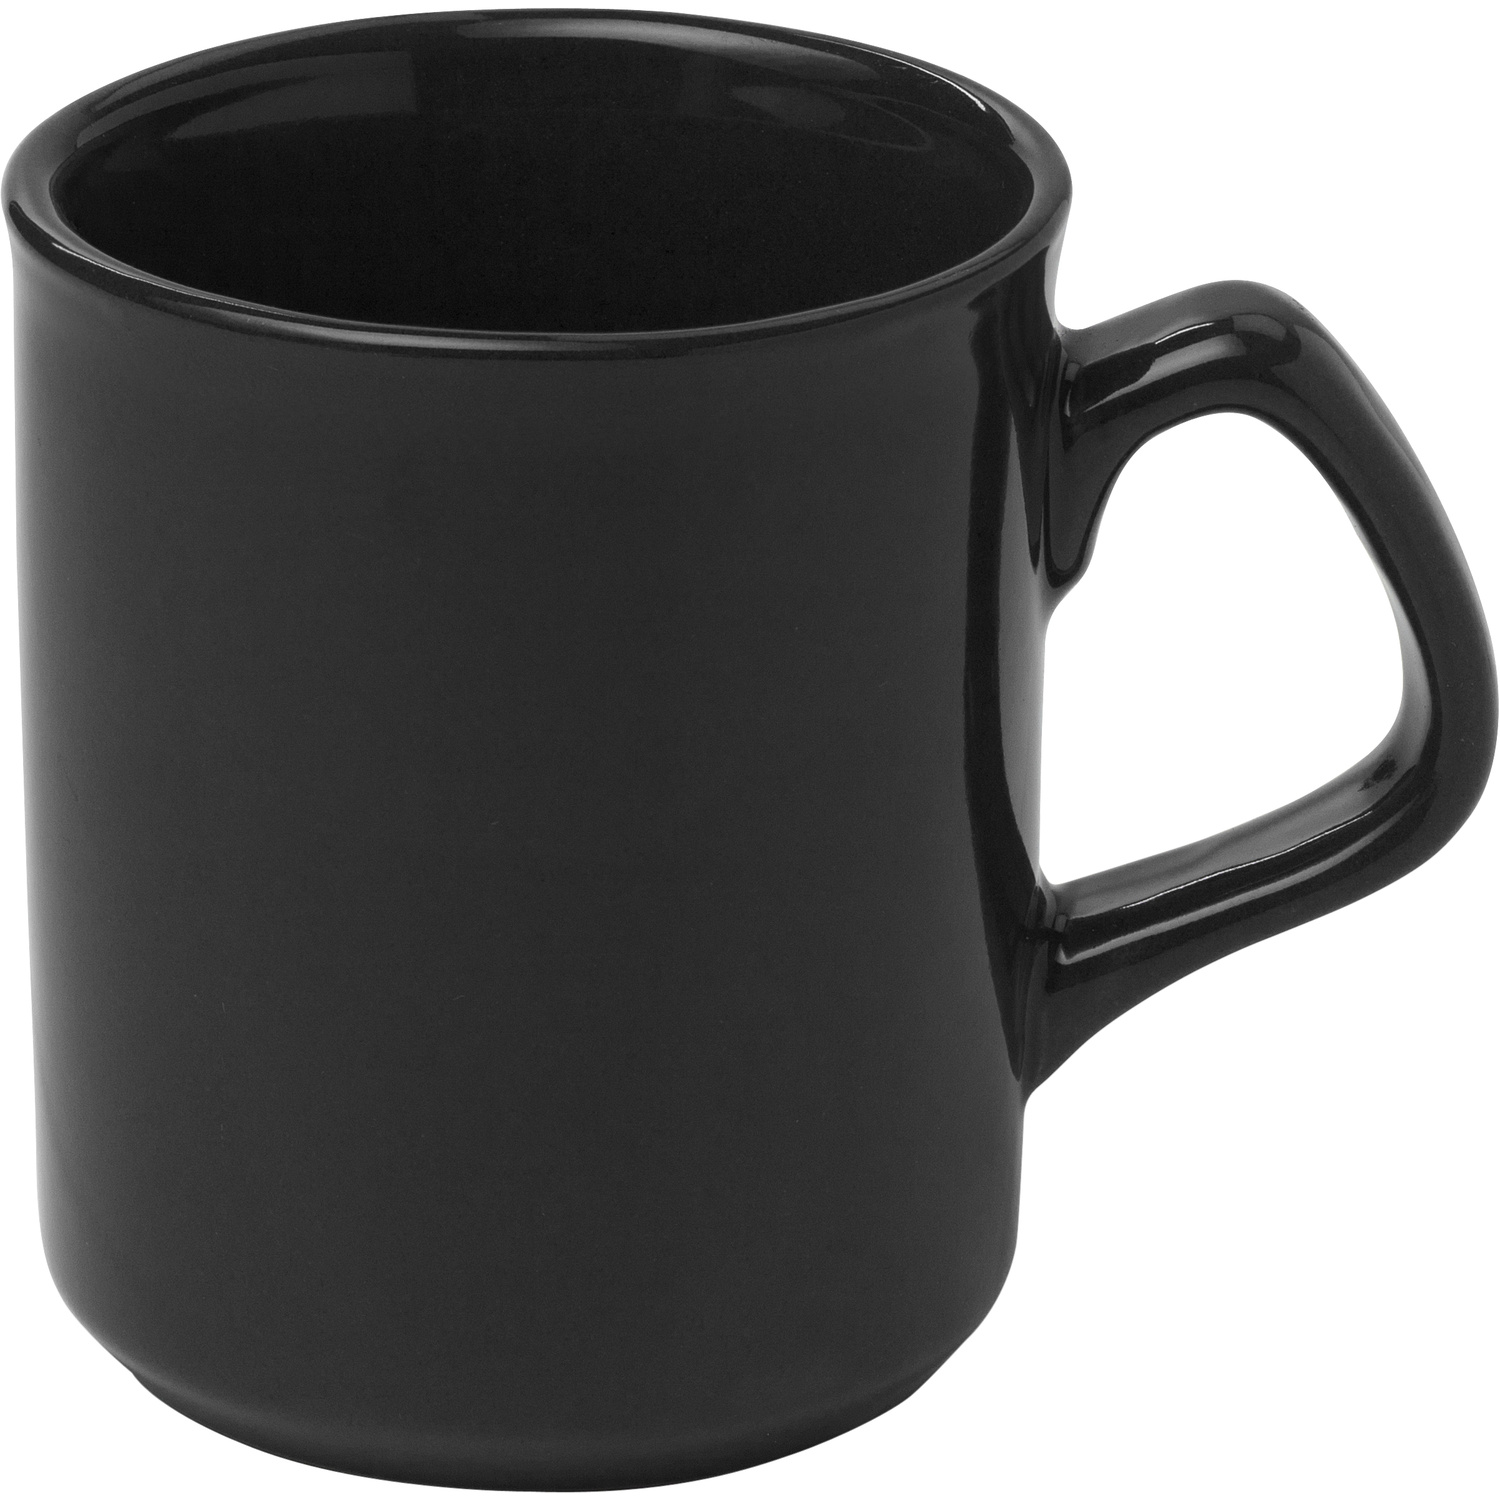 002834 001999999 3d090 frt pro01 fal - Ceramic mug (170ml)